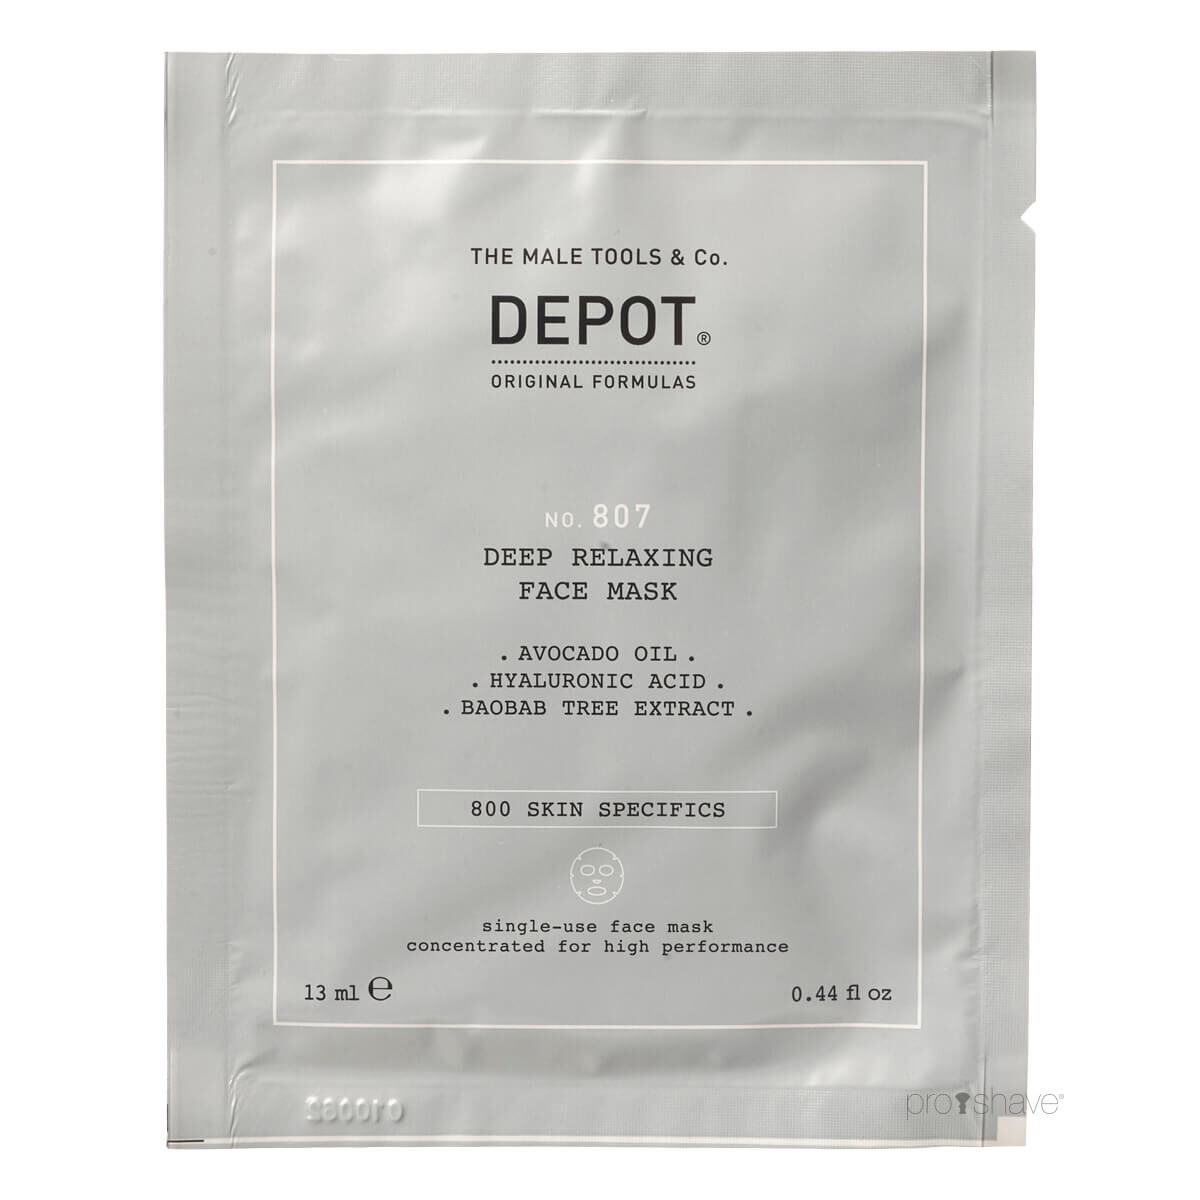 Se Depot Deep Relaxing Face Mask, No. 807, 1 stk. hos Proshave